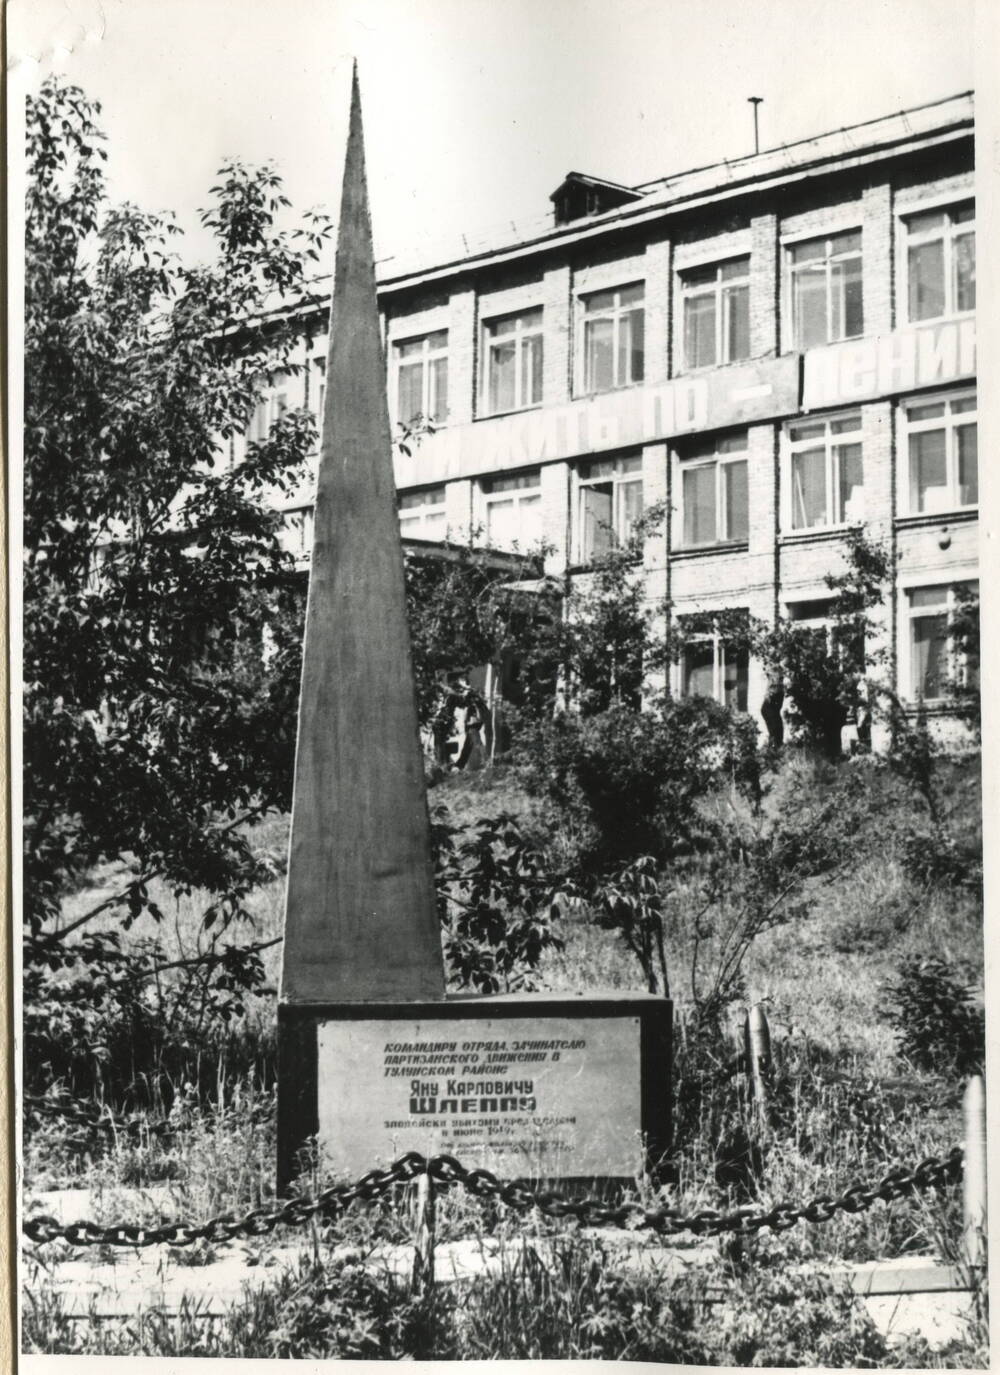 Фотография черно-белая. Монумент в честь Шляппо,  руководителя партизанского отряда в период Гражданской войны в России.